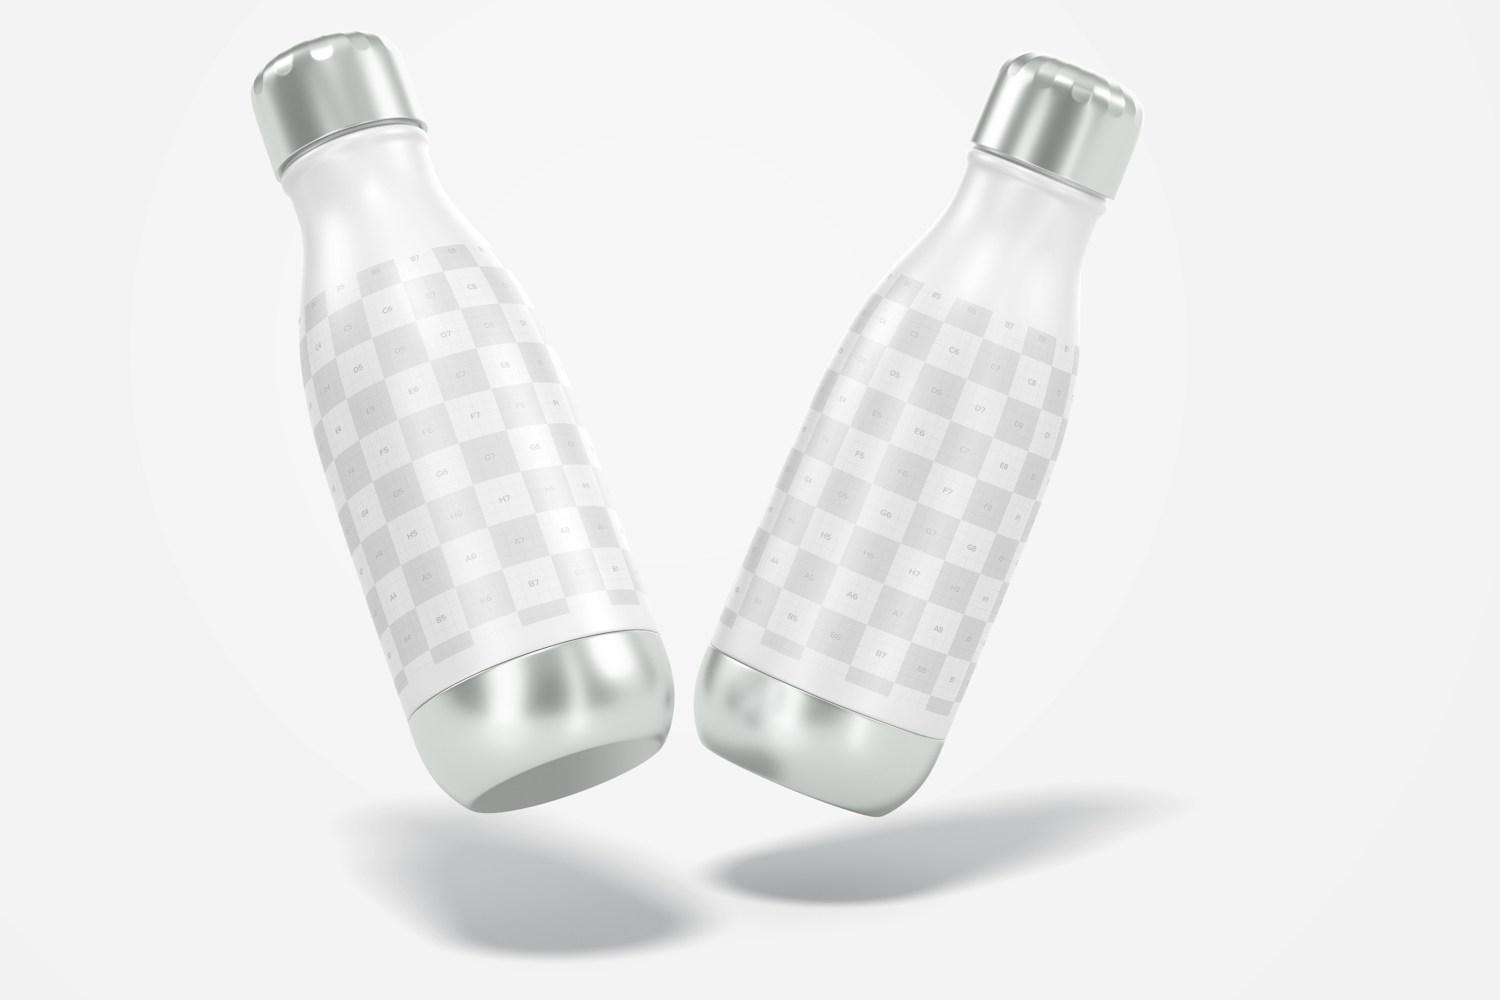 17 oz Metallic Water Bottle Mockup, Floating